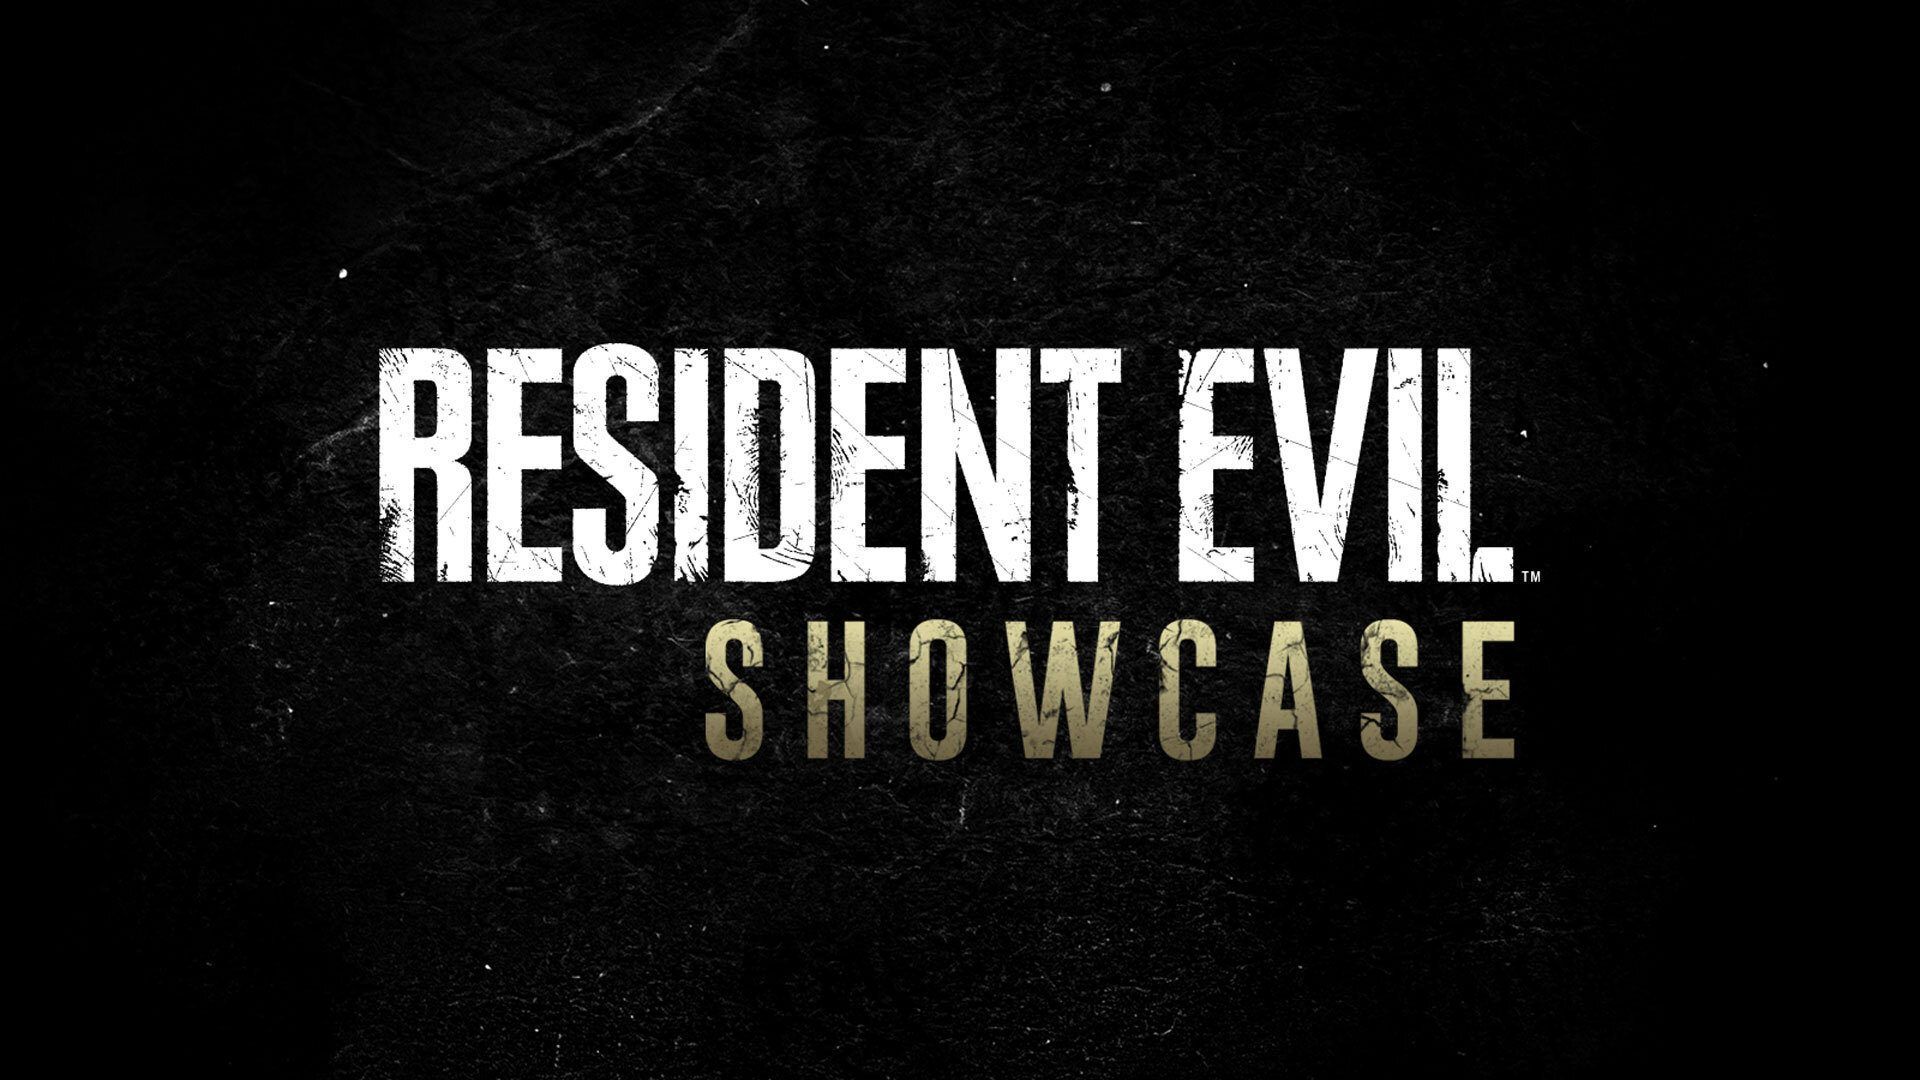 Regardez la présentation en direct de Resident Evil le 21 janvier